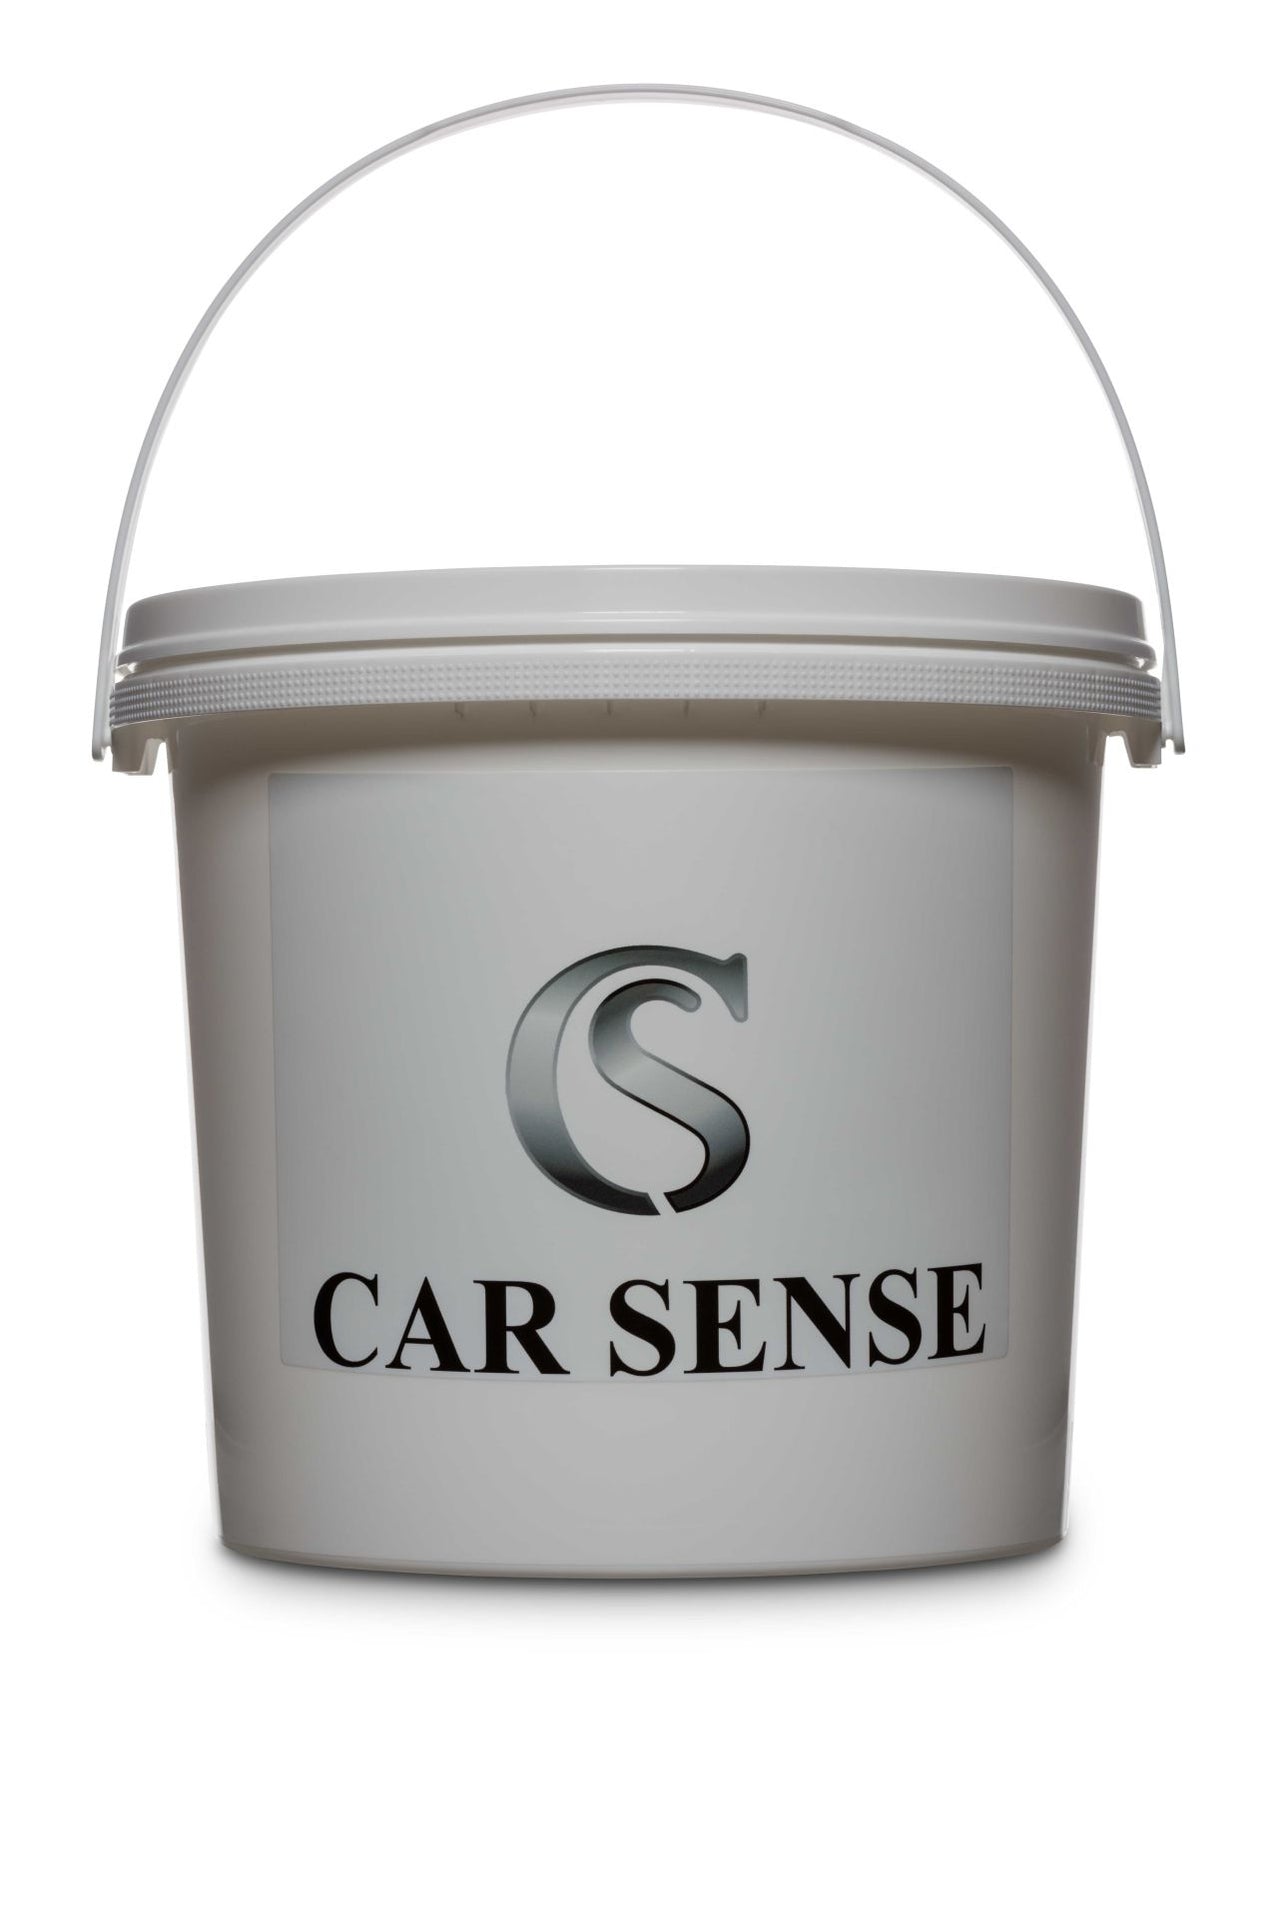 Car Sense Eimer mit dichtem Deckel perfekt zum reinigen von Auto oder Haushalt